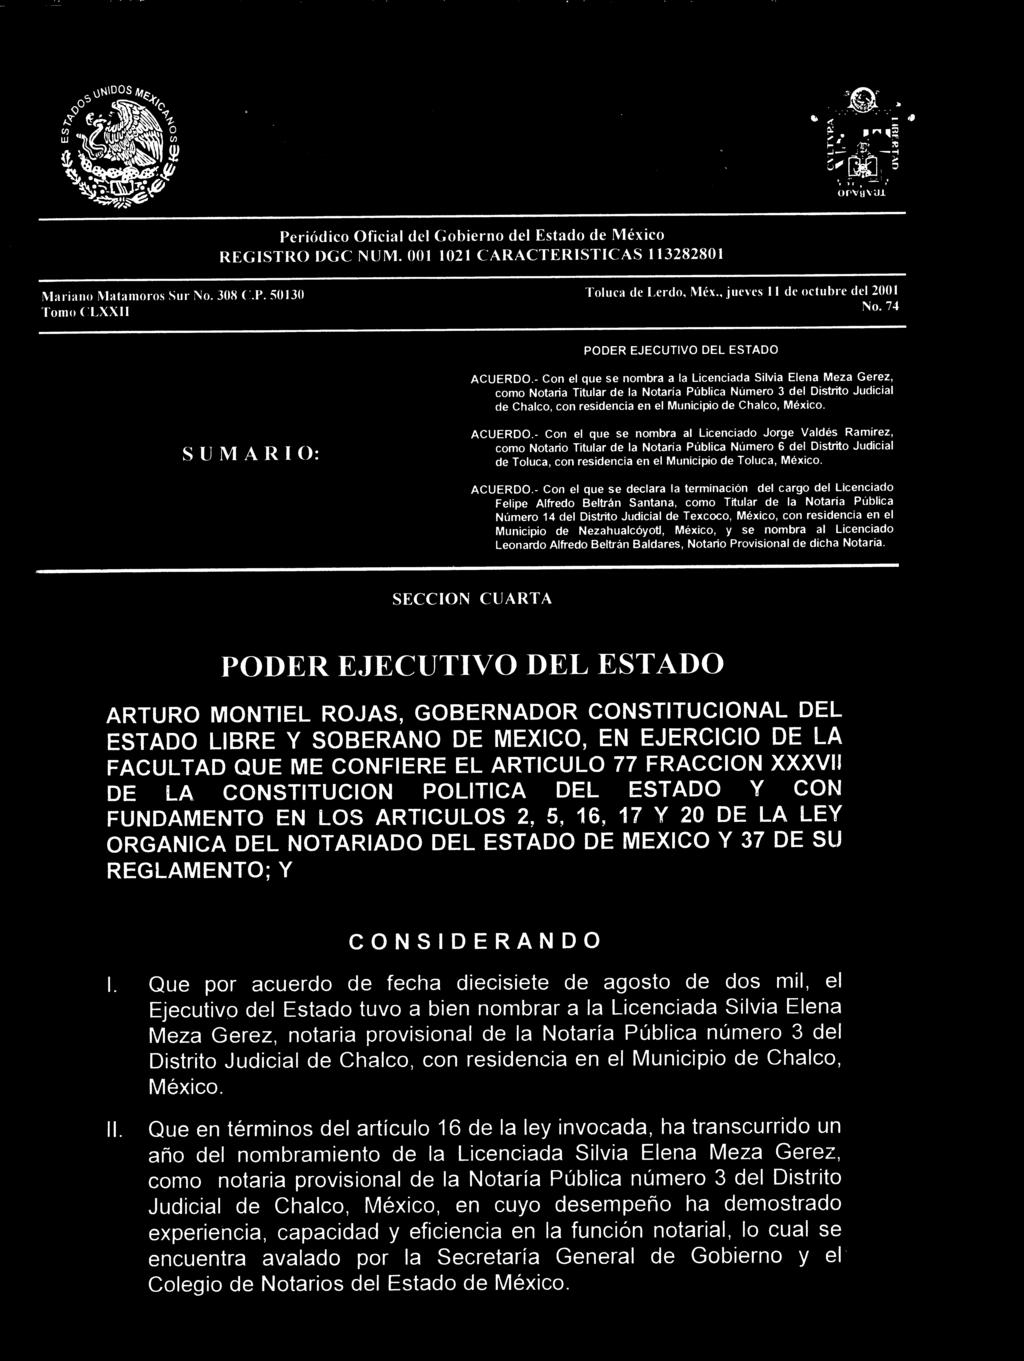 - Con el que se nombra a la Licenciada Silvia Elena Meza Gerez, como Notaria Titular de la Notaría Pública Número 3 del Distrito Judicial de Chalco, con residencia en el Municipio de Chalco, México.